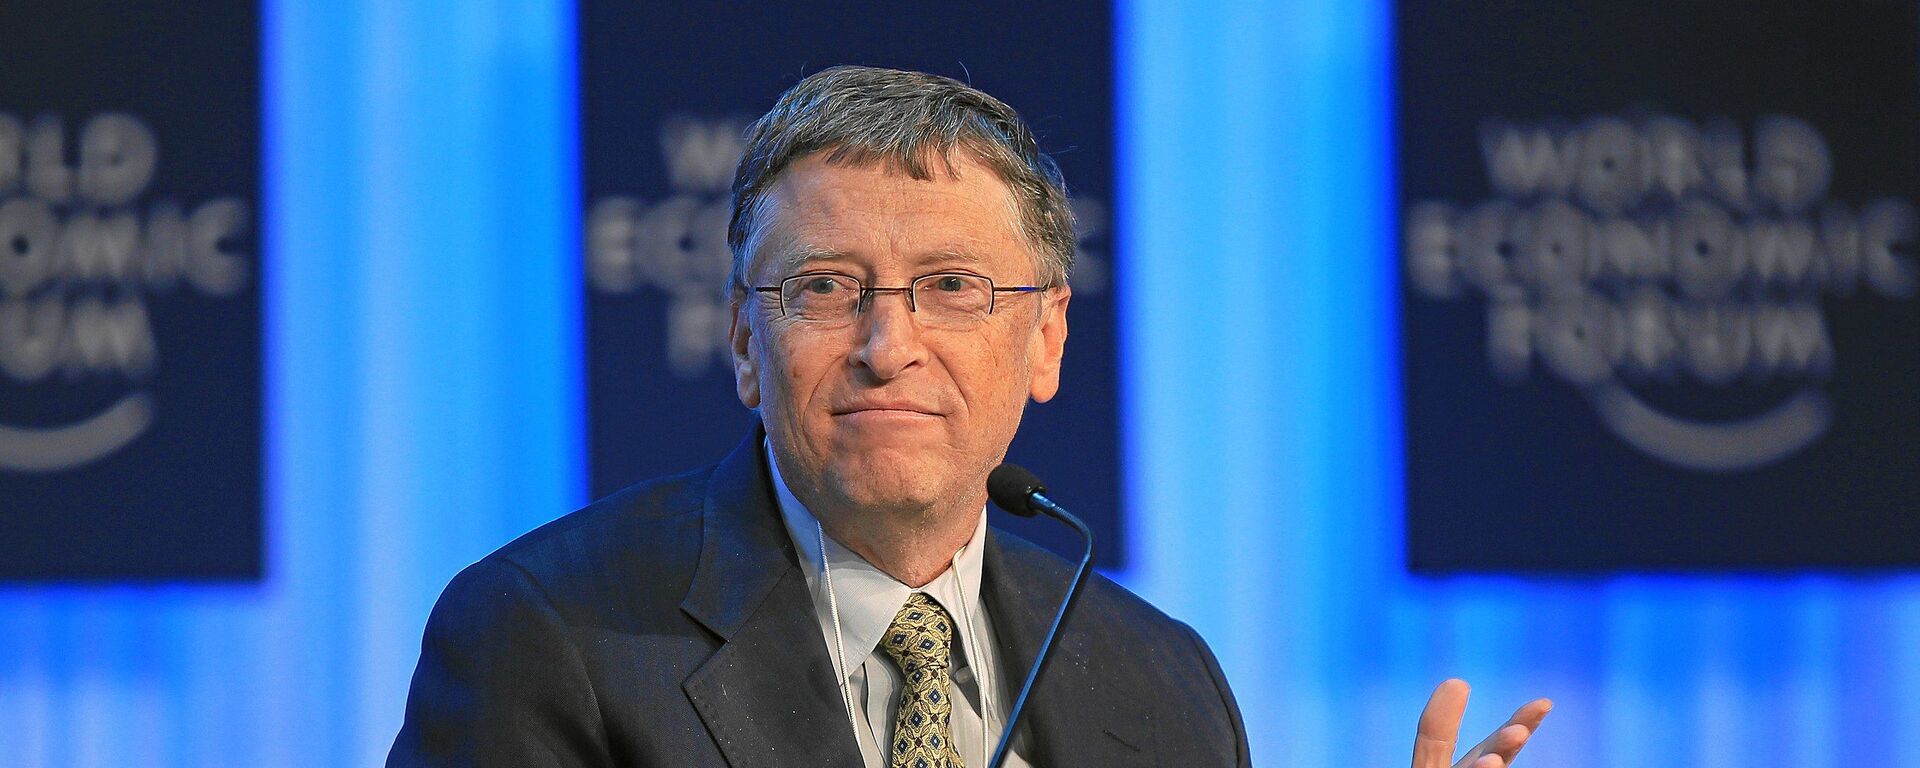 Милијардер и оснивач Мајкрософта Бил Гејтс на Светском економском форуму 2013. године - Sputnik Србија, 1920, 20.05.2021